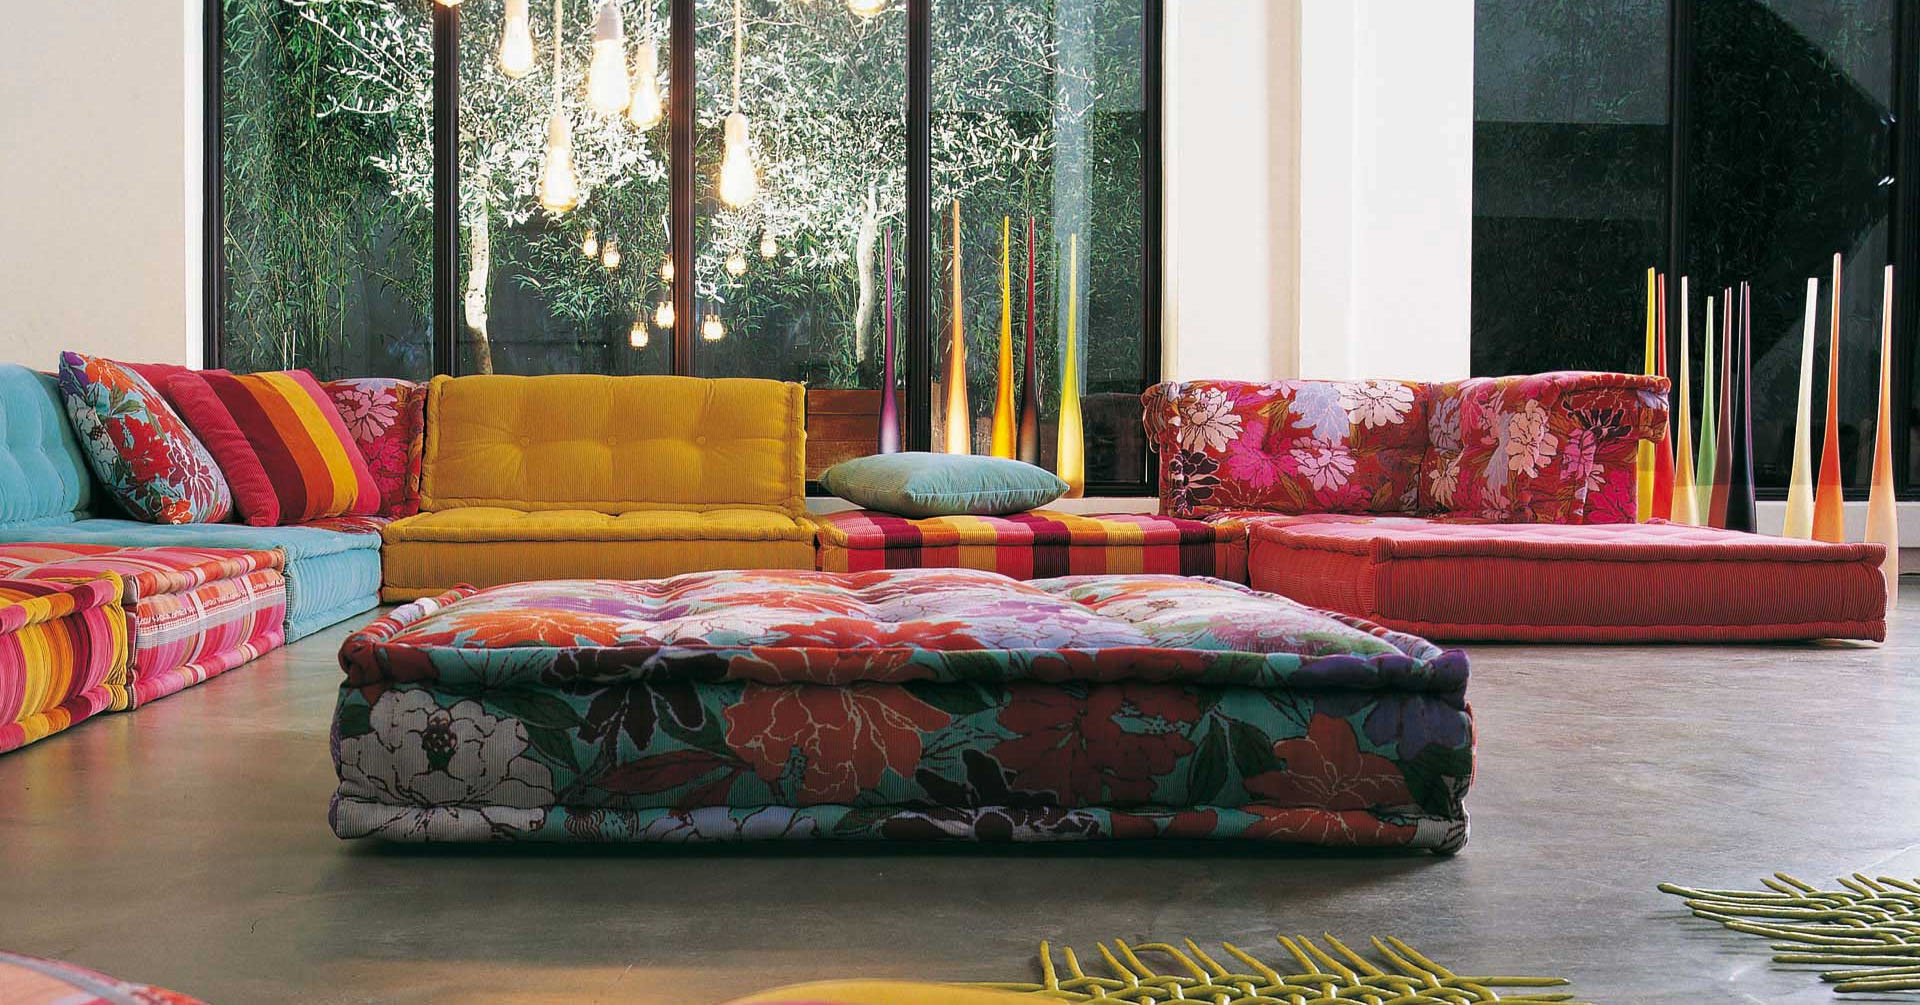 roche bobois sofa bed